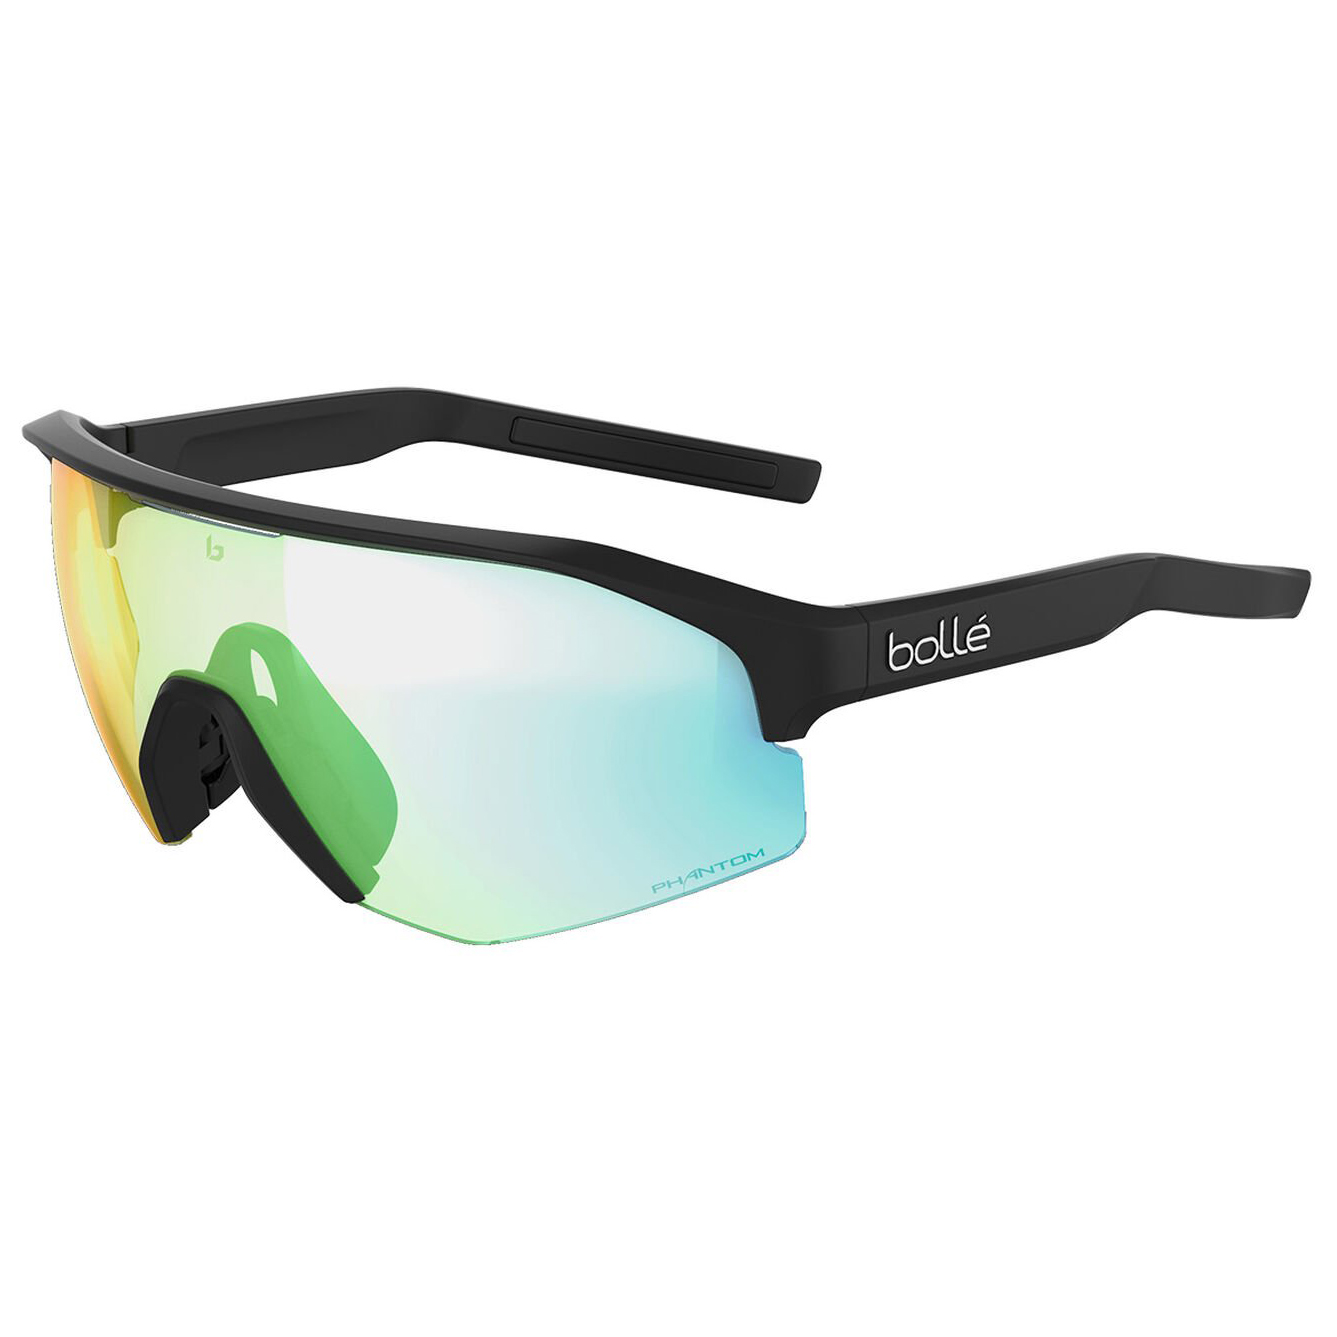 Велосипедные очки Bollé Lightshifter Photochromic S1 3 (VLT 62 9%), цвет Black Matte